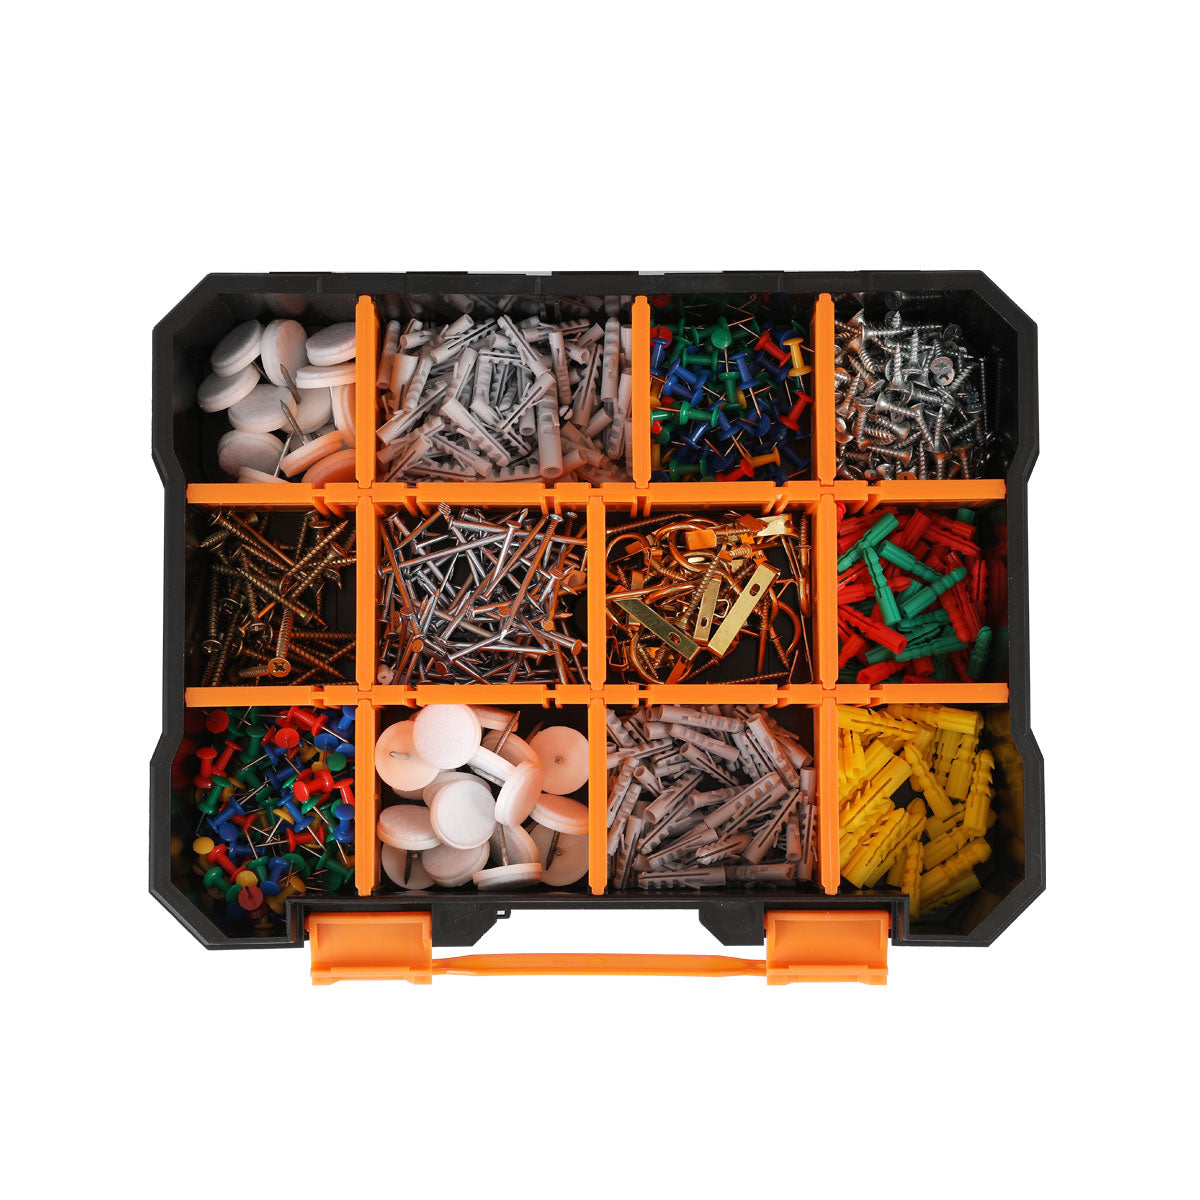 Kendo 3-in-1 Plastic Interlockable Organizers